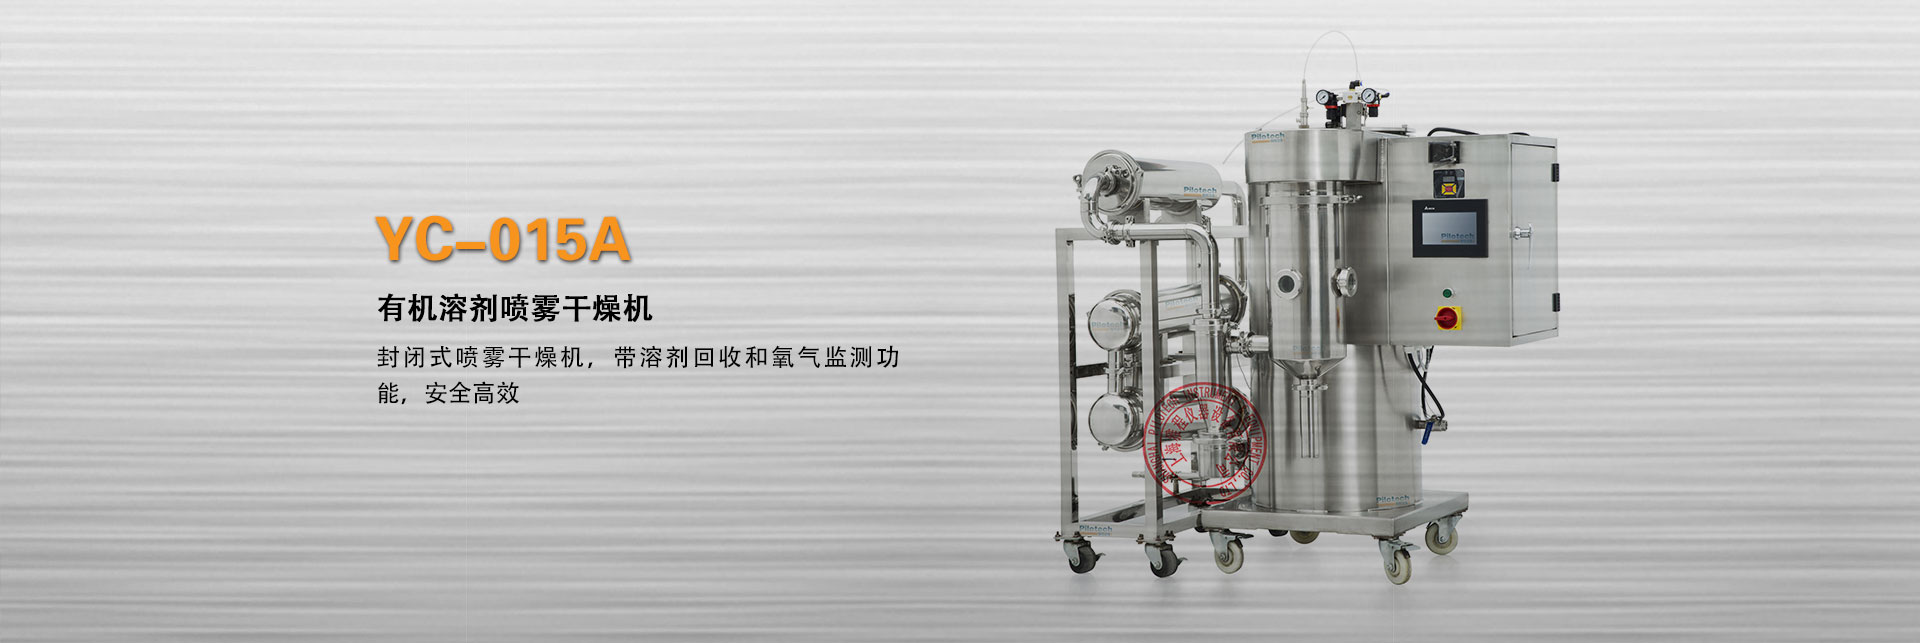 上海雅程YC-015A封闭式有机溶剂喷雾干燥机